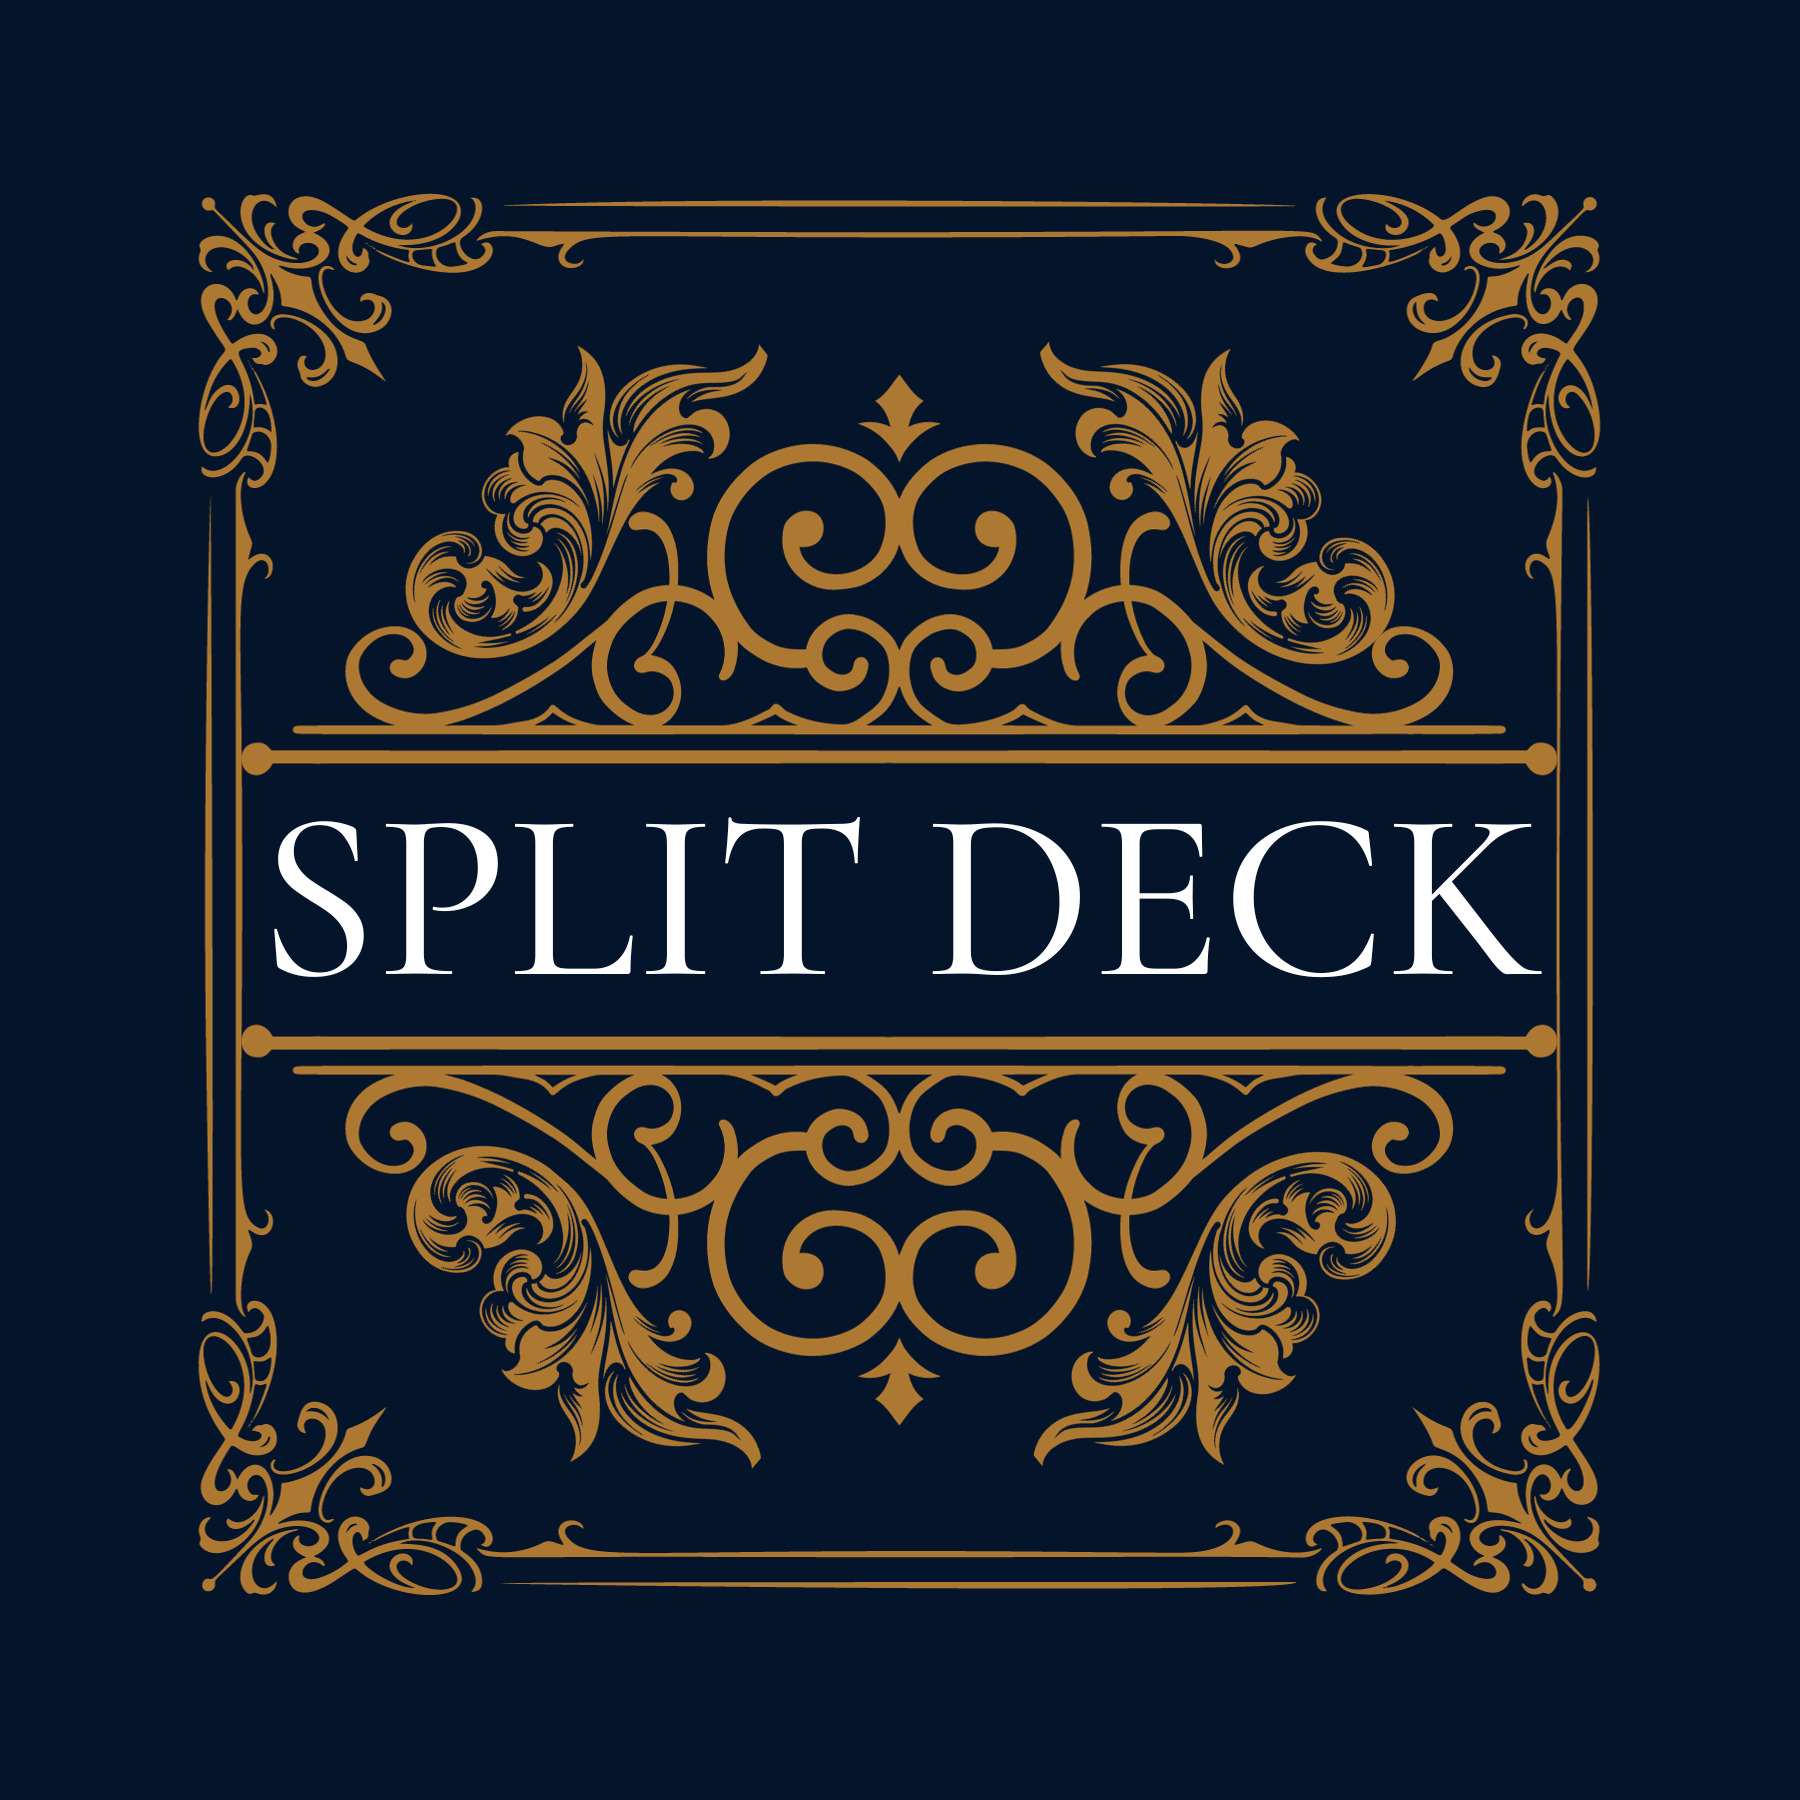 Split Deck